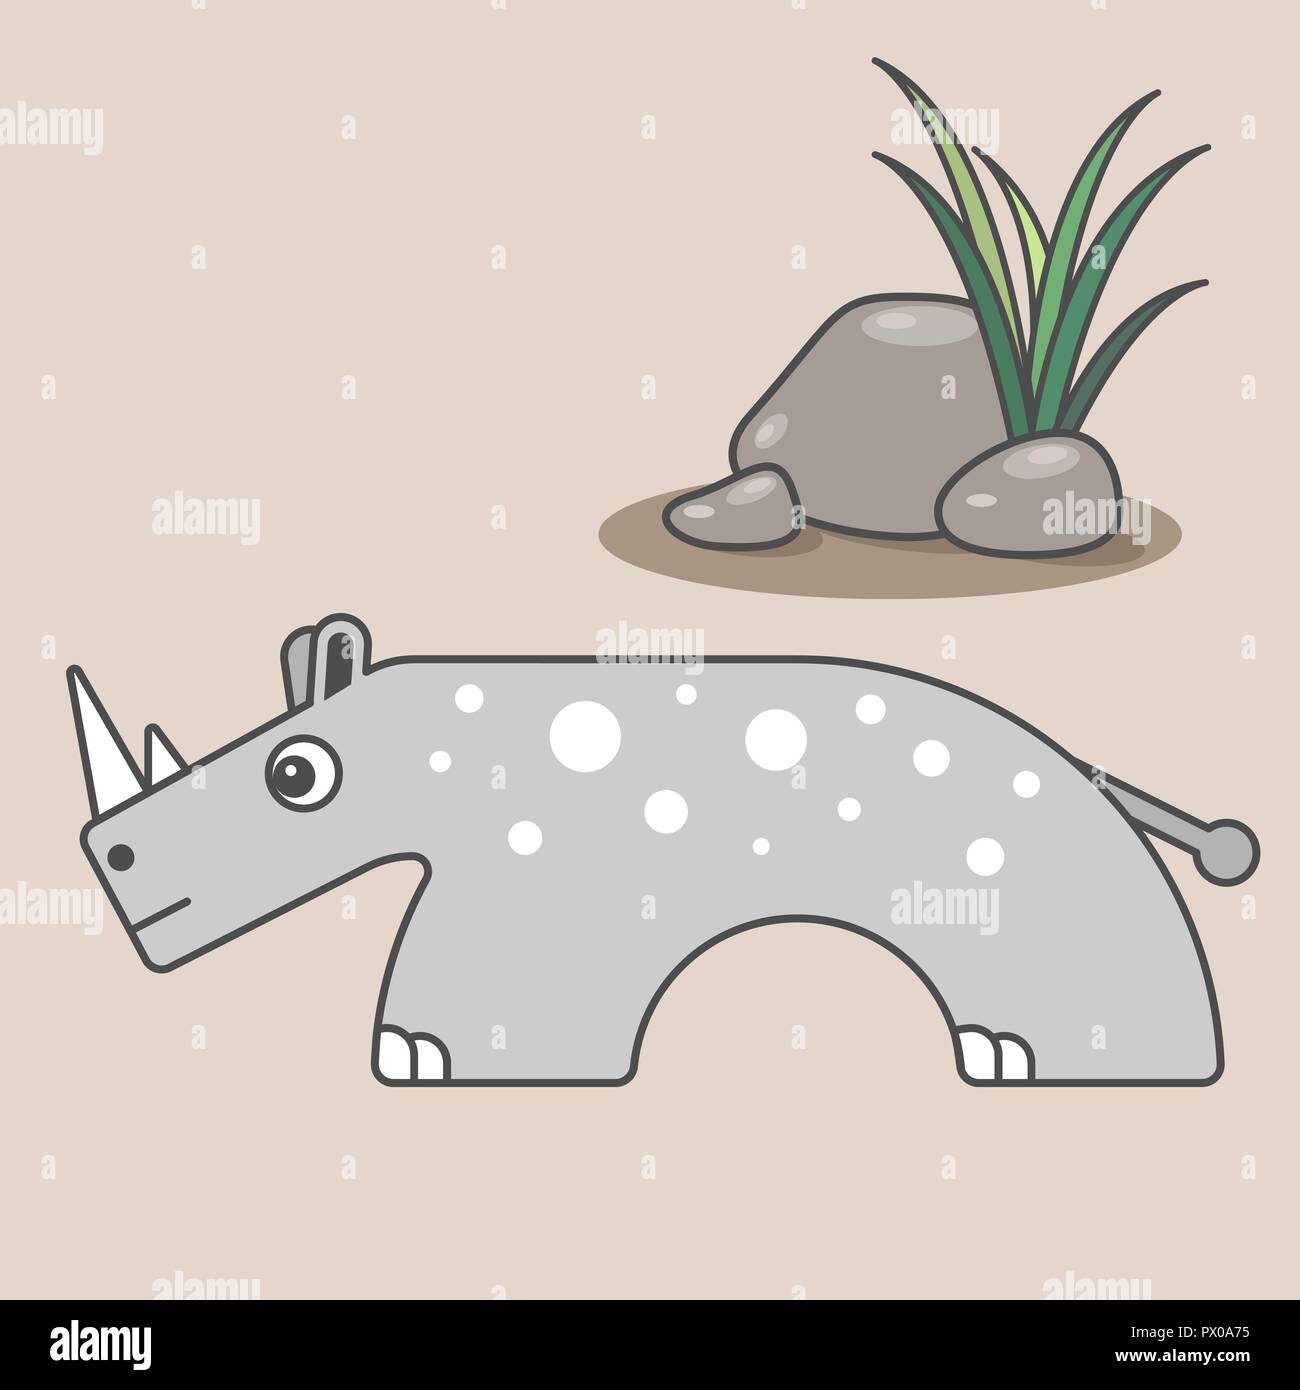 Rinoceronte di cartoni animati per i bambini. Illustrazione di rhino per bambini. Design piatto. Animale in stile minimalista. Serie di animali semicircolare Illustrazione Vettoriale